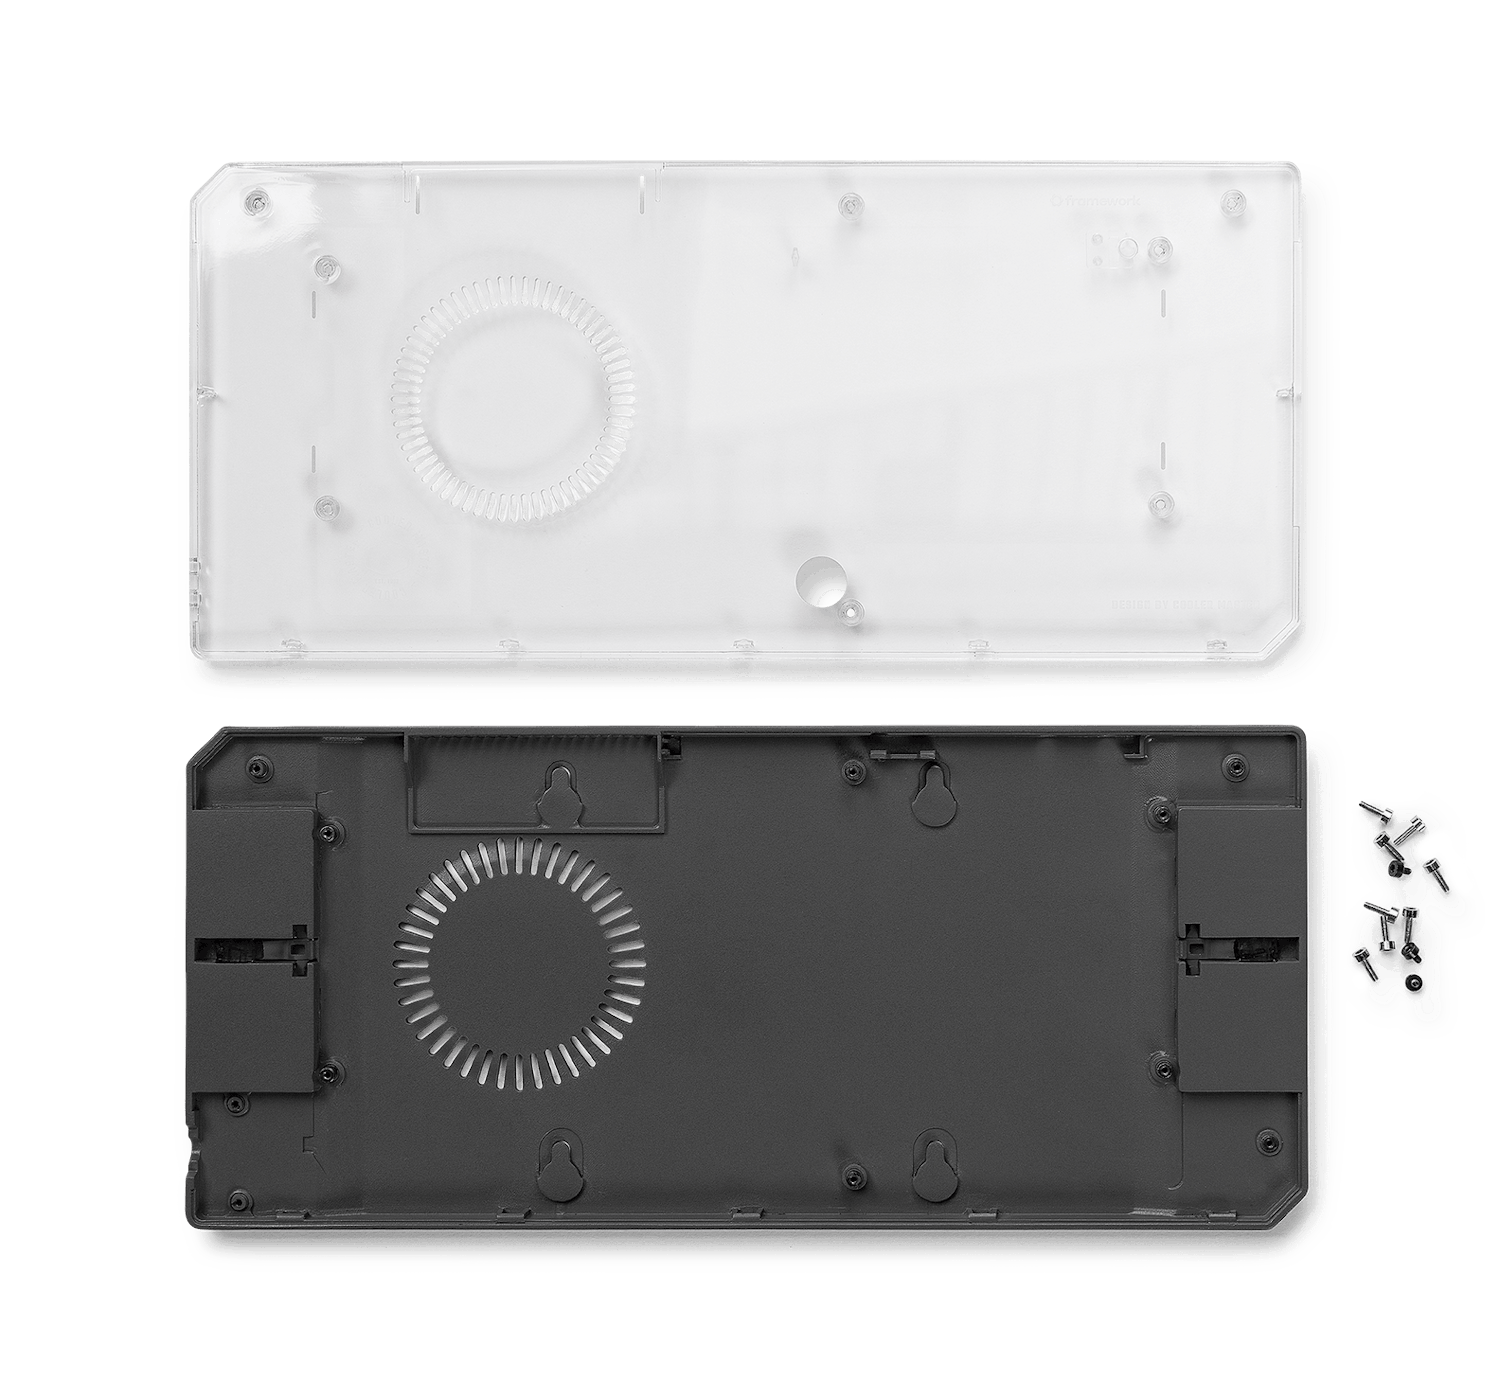 Cooler Master Mainboard case, transparent